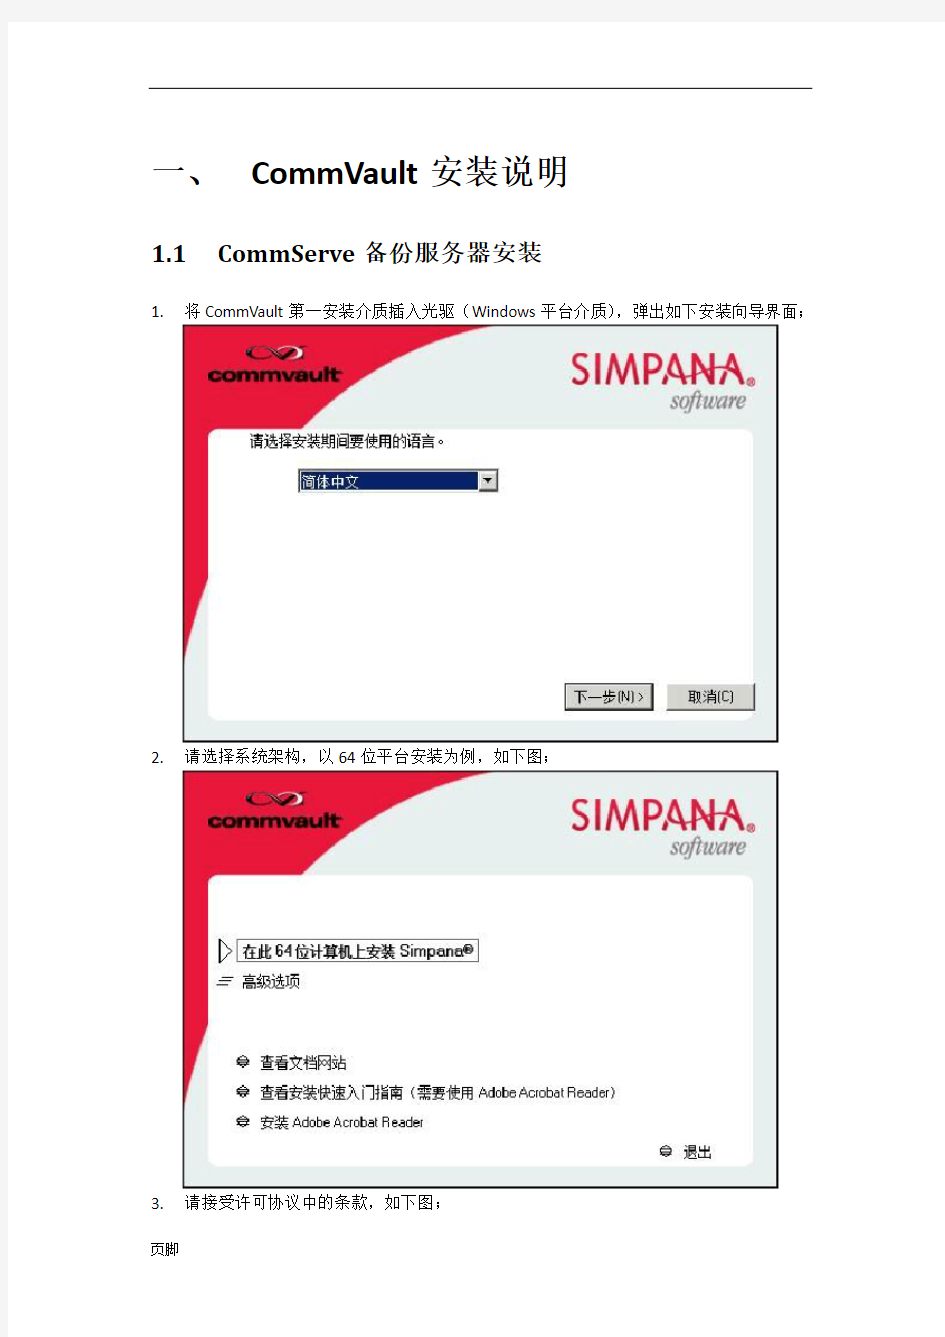 CommVault一体化信息管理系统安装配置操作手册范本